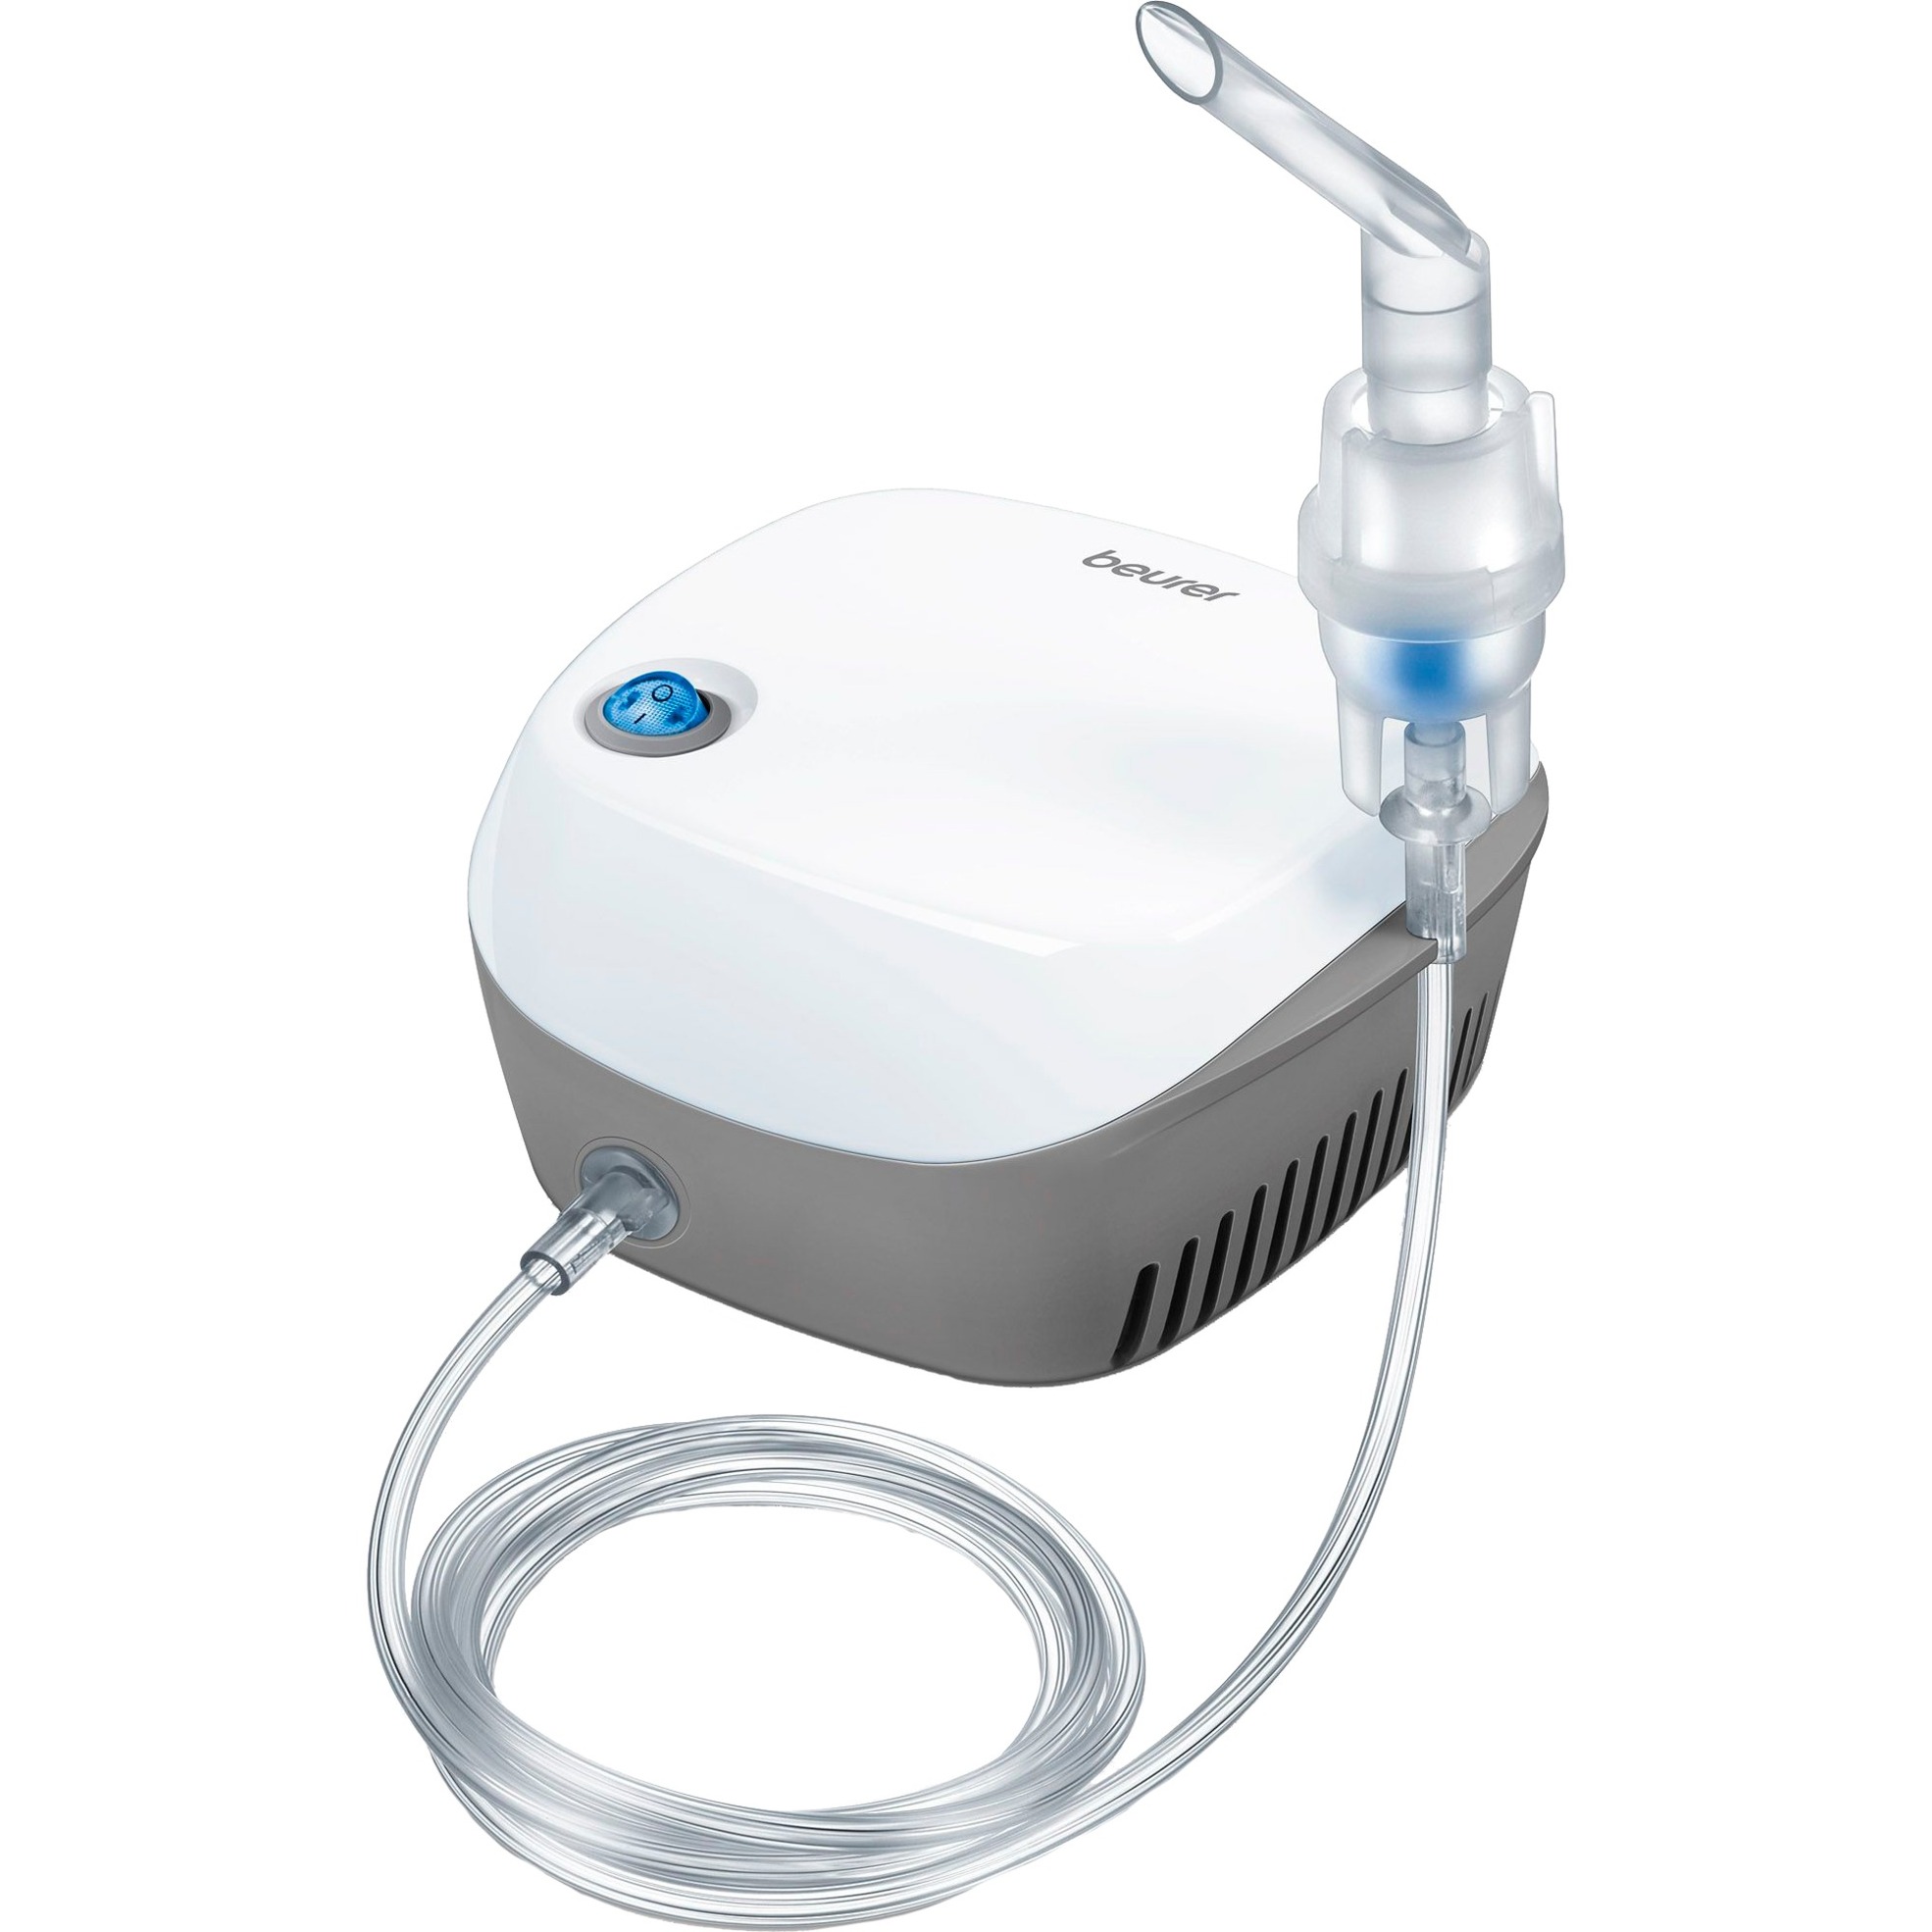 Image of Alternate - Inhalationsgerät IH 18, Inhalator online einkaufen bei Alternate